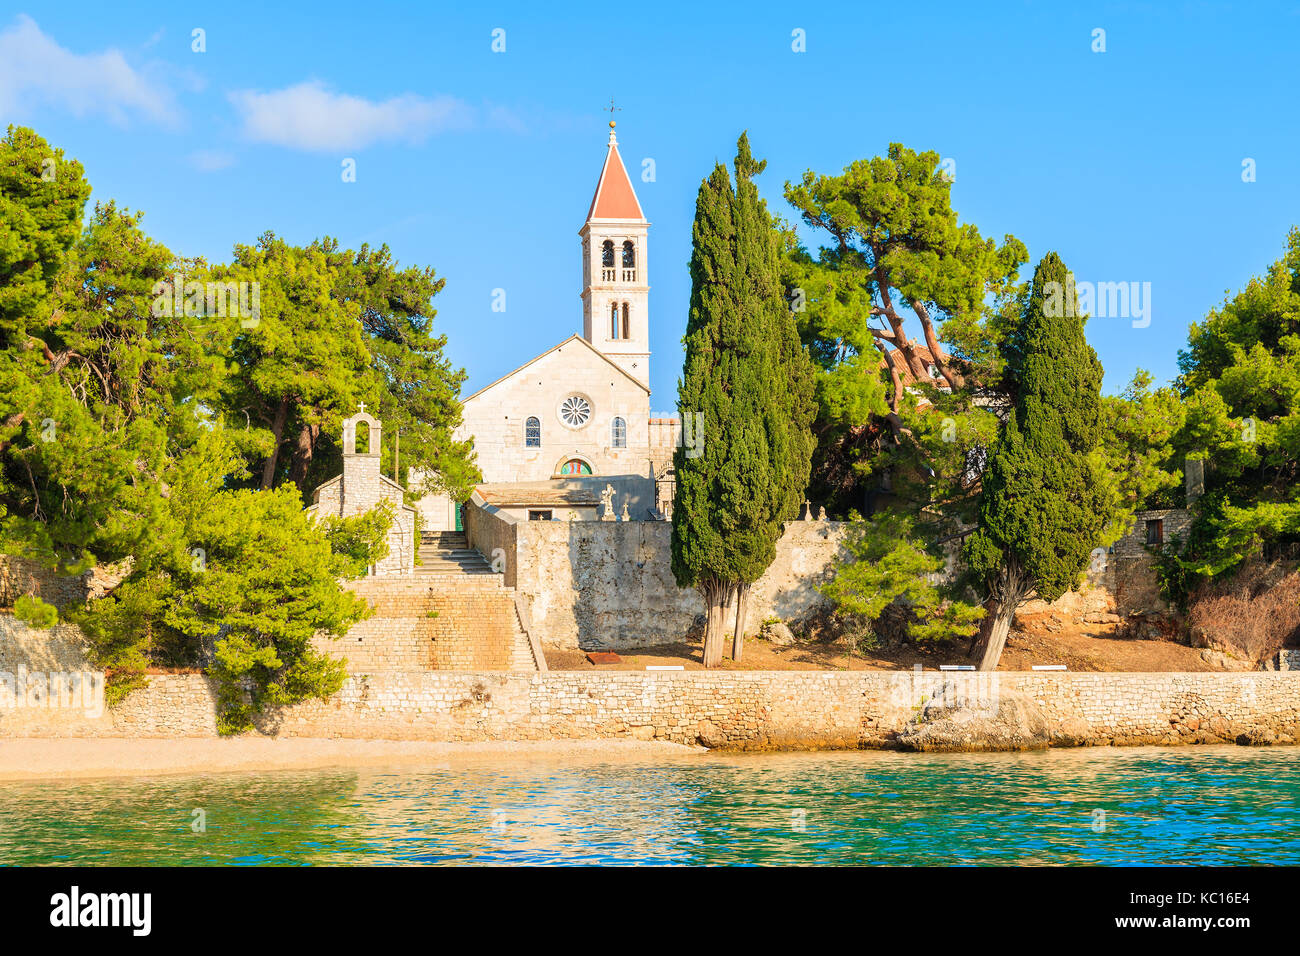 Anzeigen von Dominikanische Kloster, in einer wunderschönen Bucht mit Strand, Stadt Bol, Insel Brac, Kroatien Stockfoto